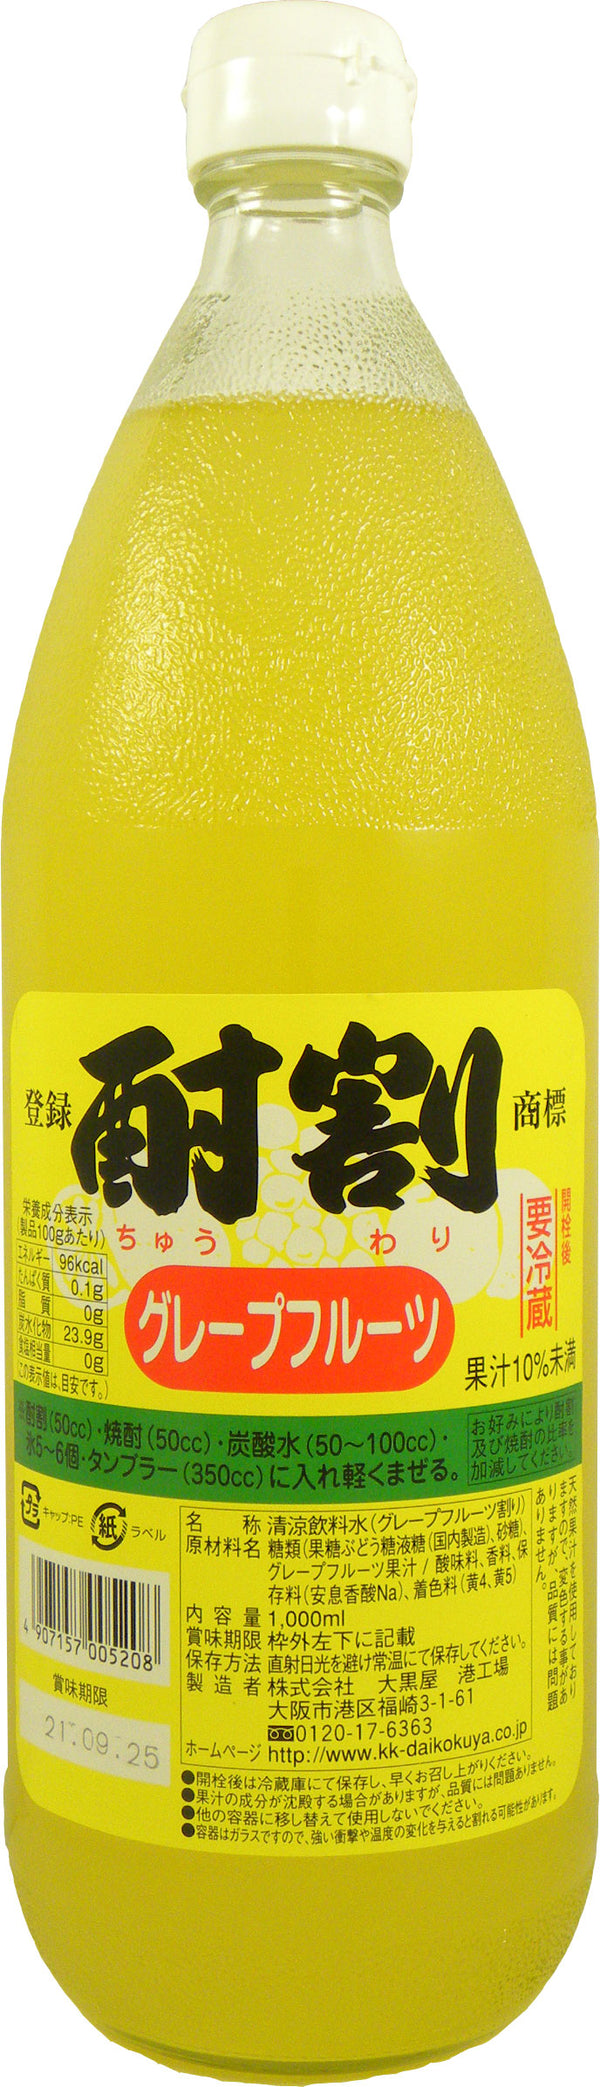 Daikokuya Chuwari Grapefruit 1L Bottle Syrup Commercial Use